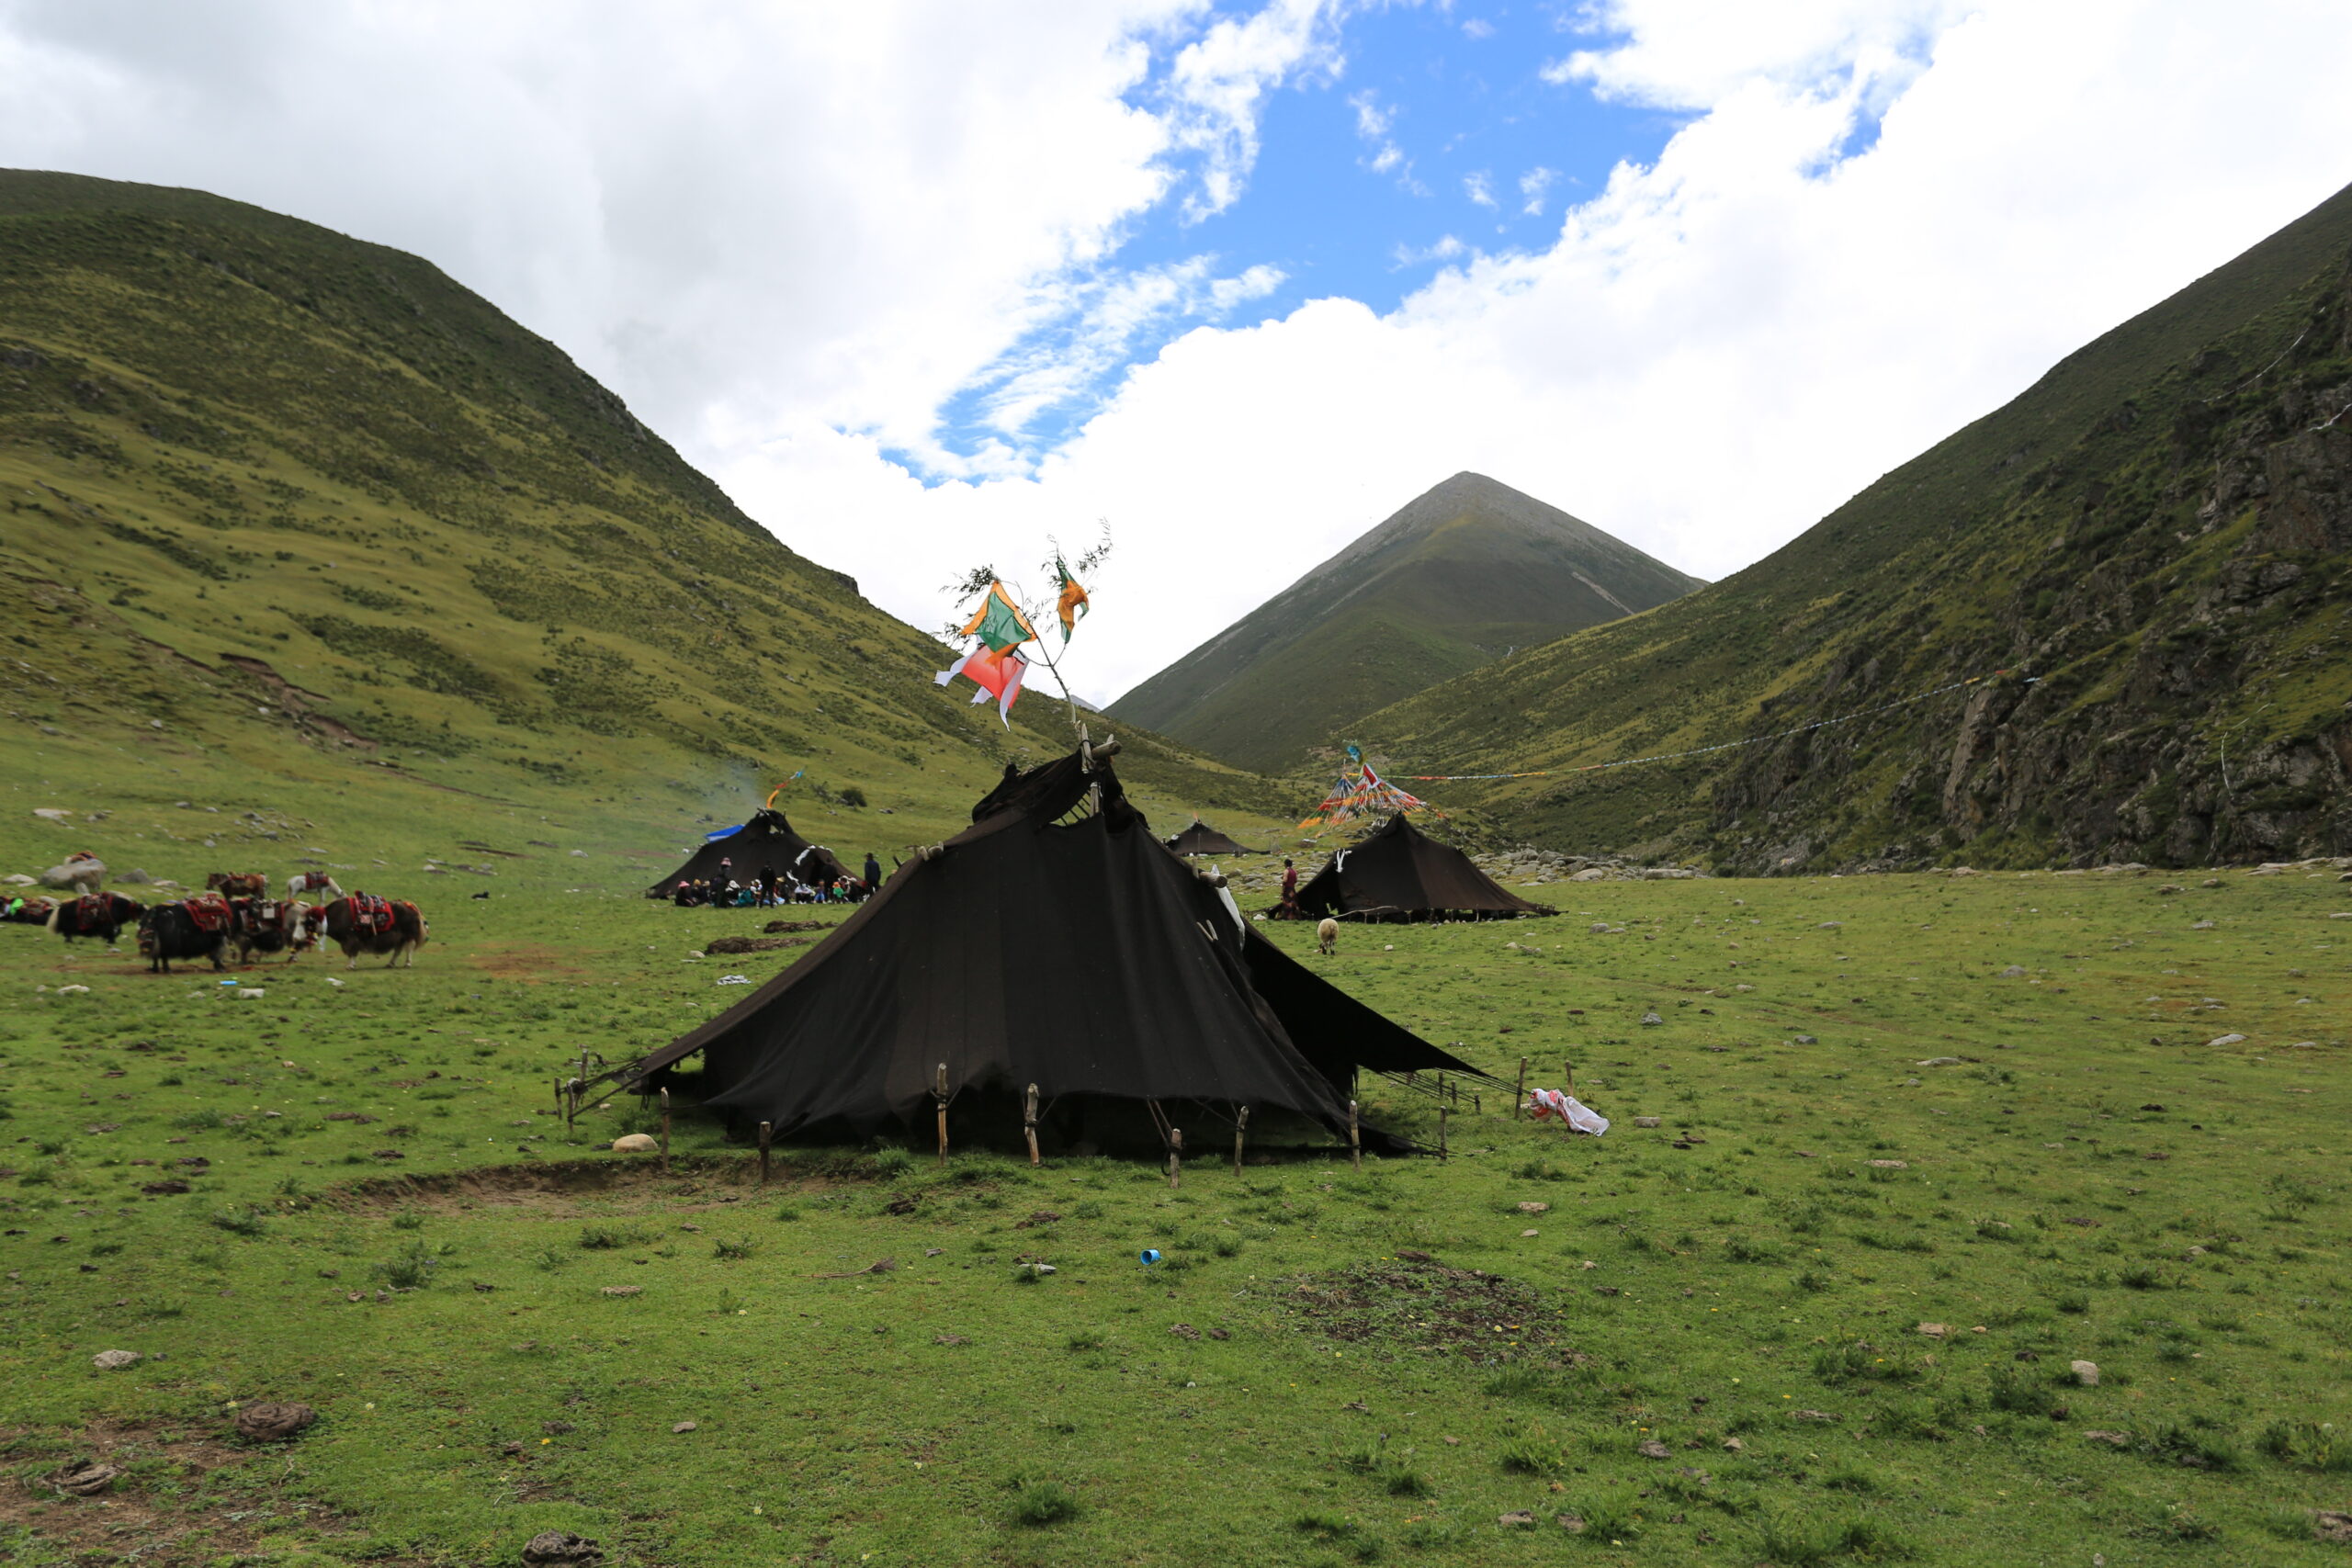 Aku Tonpa nomad camp 3